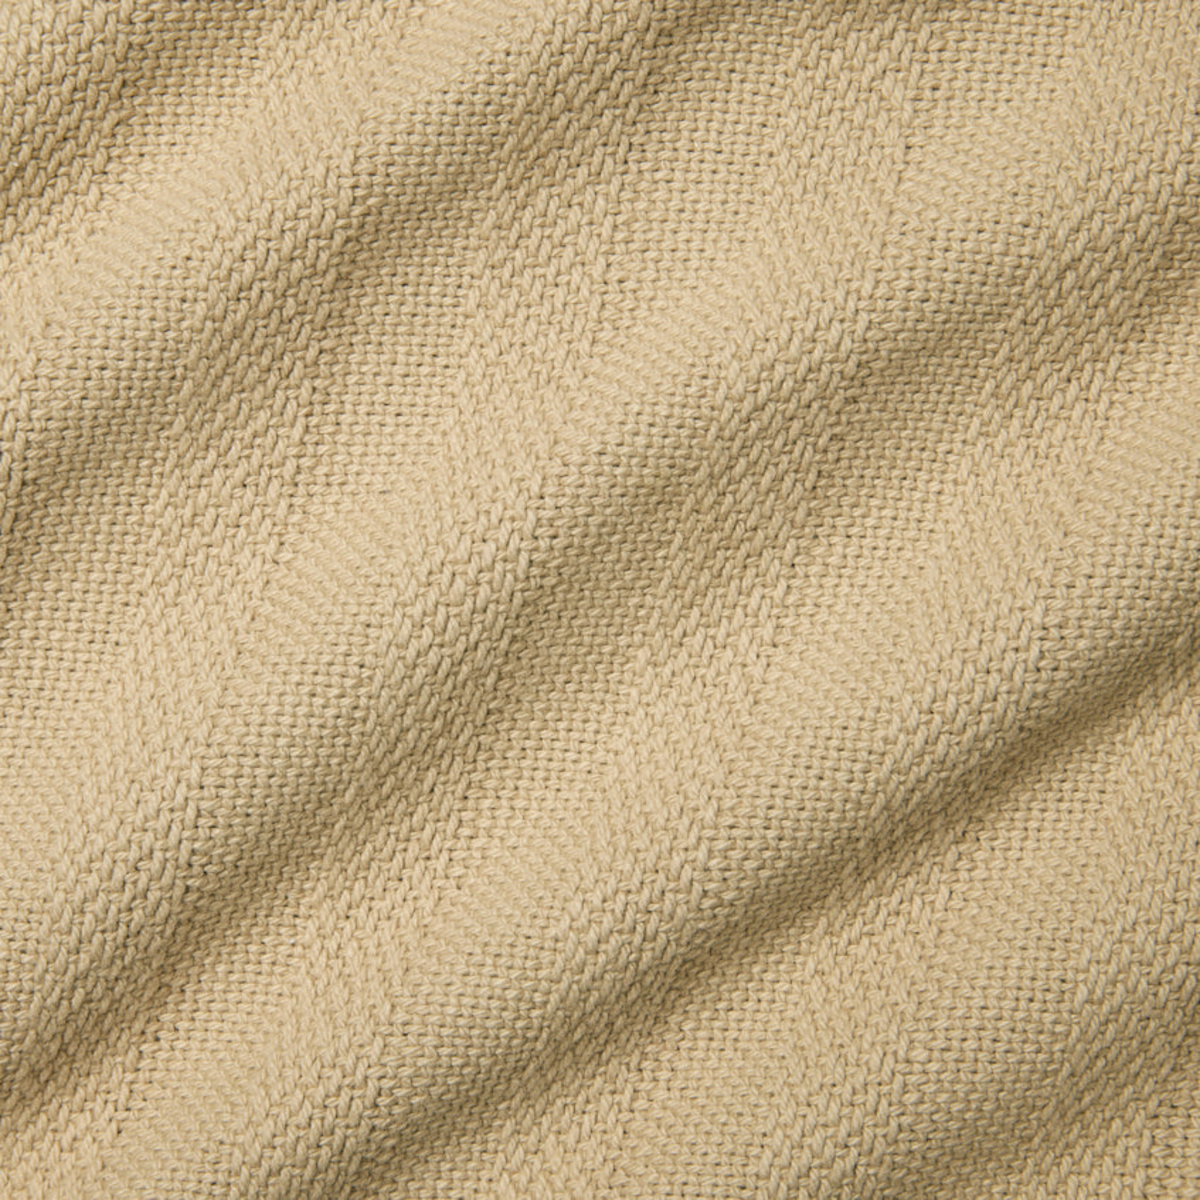 Swatch Sample of Sferra Tavira Blanket in Dark Khaki Color